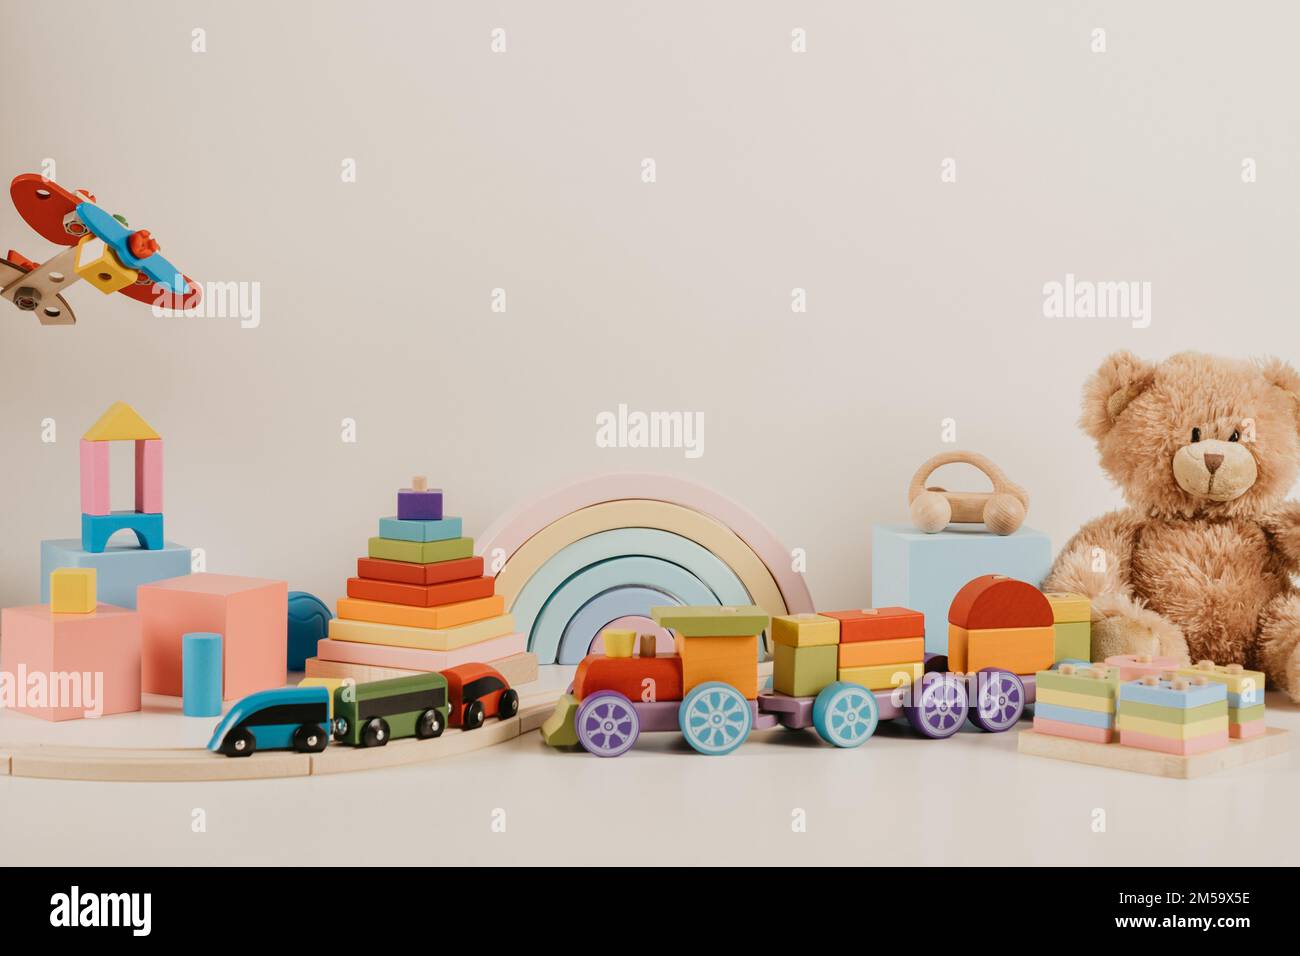 Pädagogische Spielzeugsammlung für Kinder Teddybär, Zug, Flugzeug, Regenbogen, Holzmusical, Sensorik, Sortieren und Stapeln von Babyspielzeug auf weißem Hintergrund Stockfoto